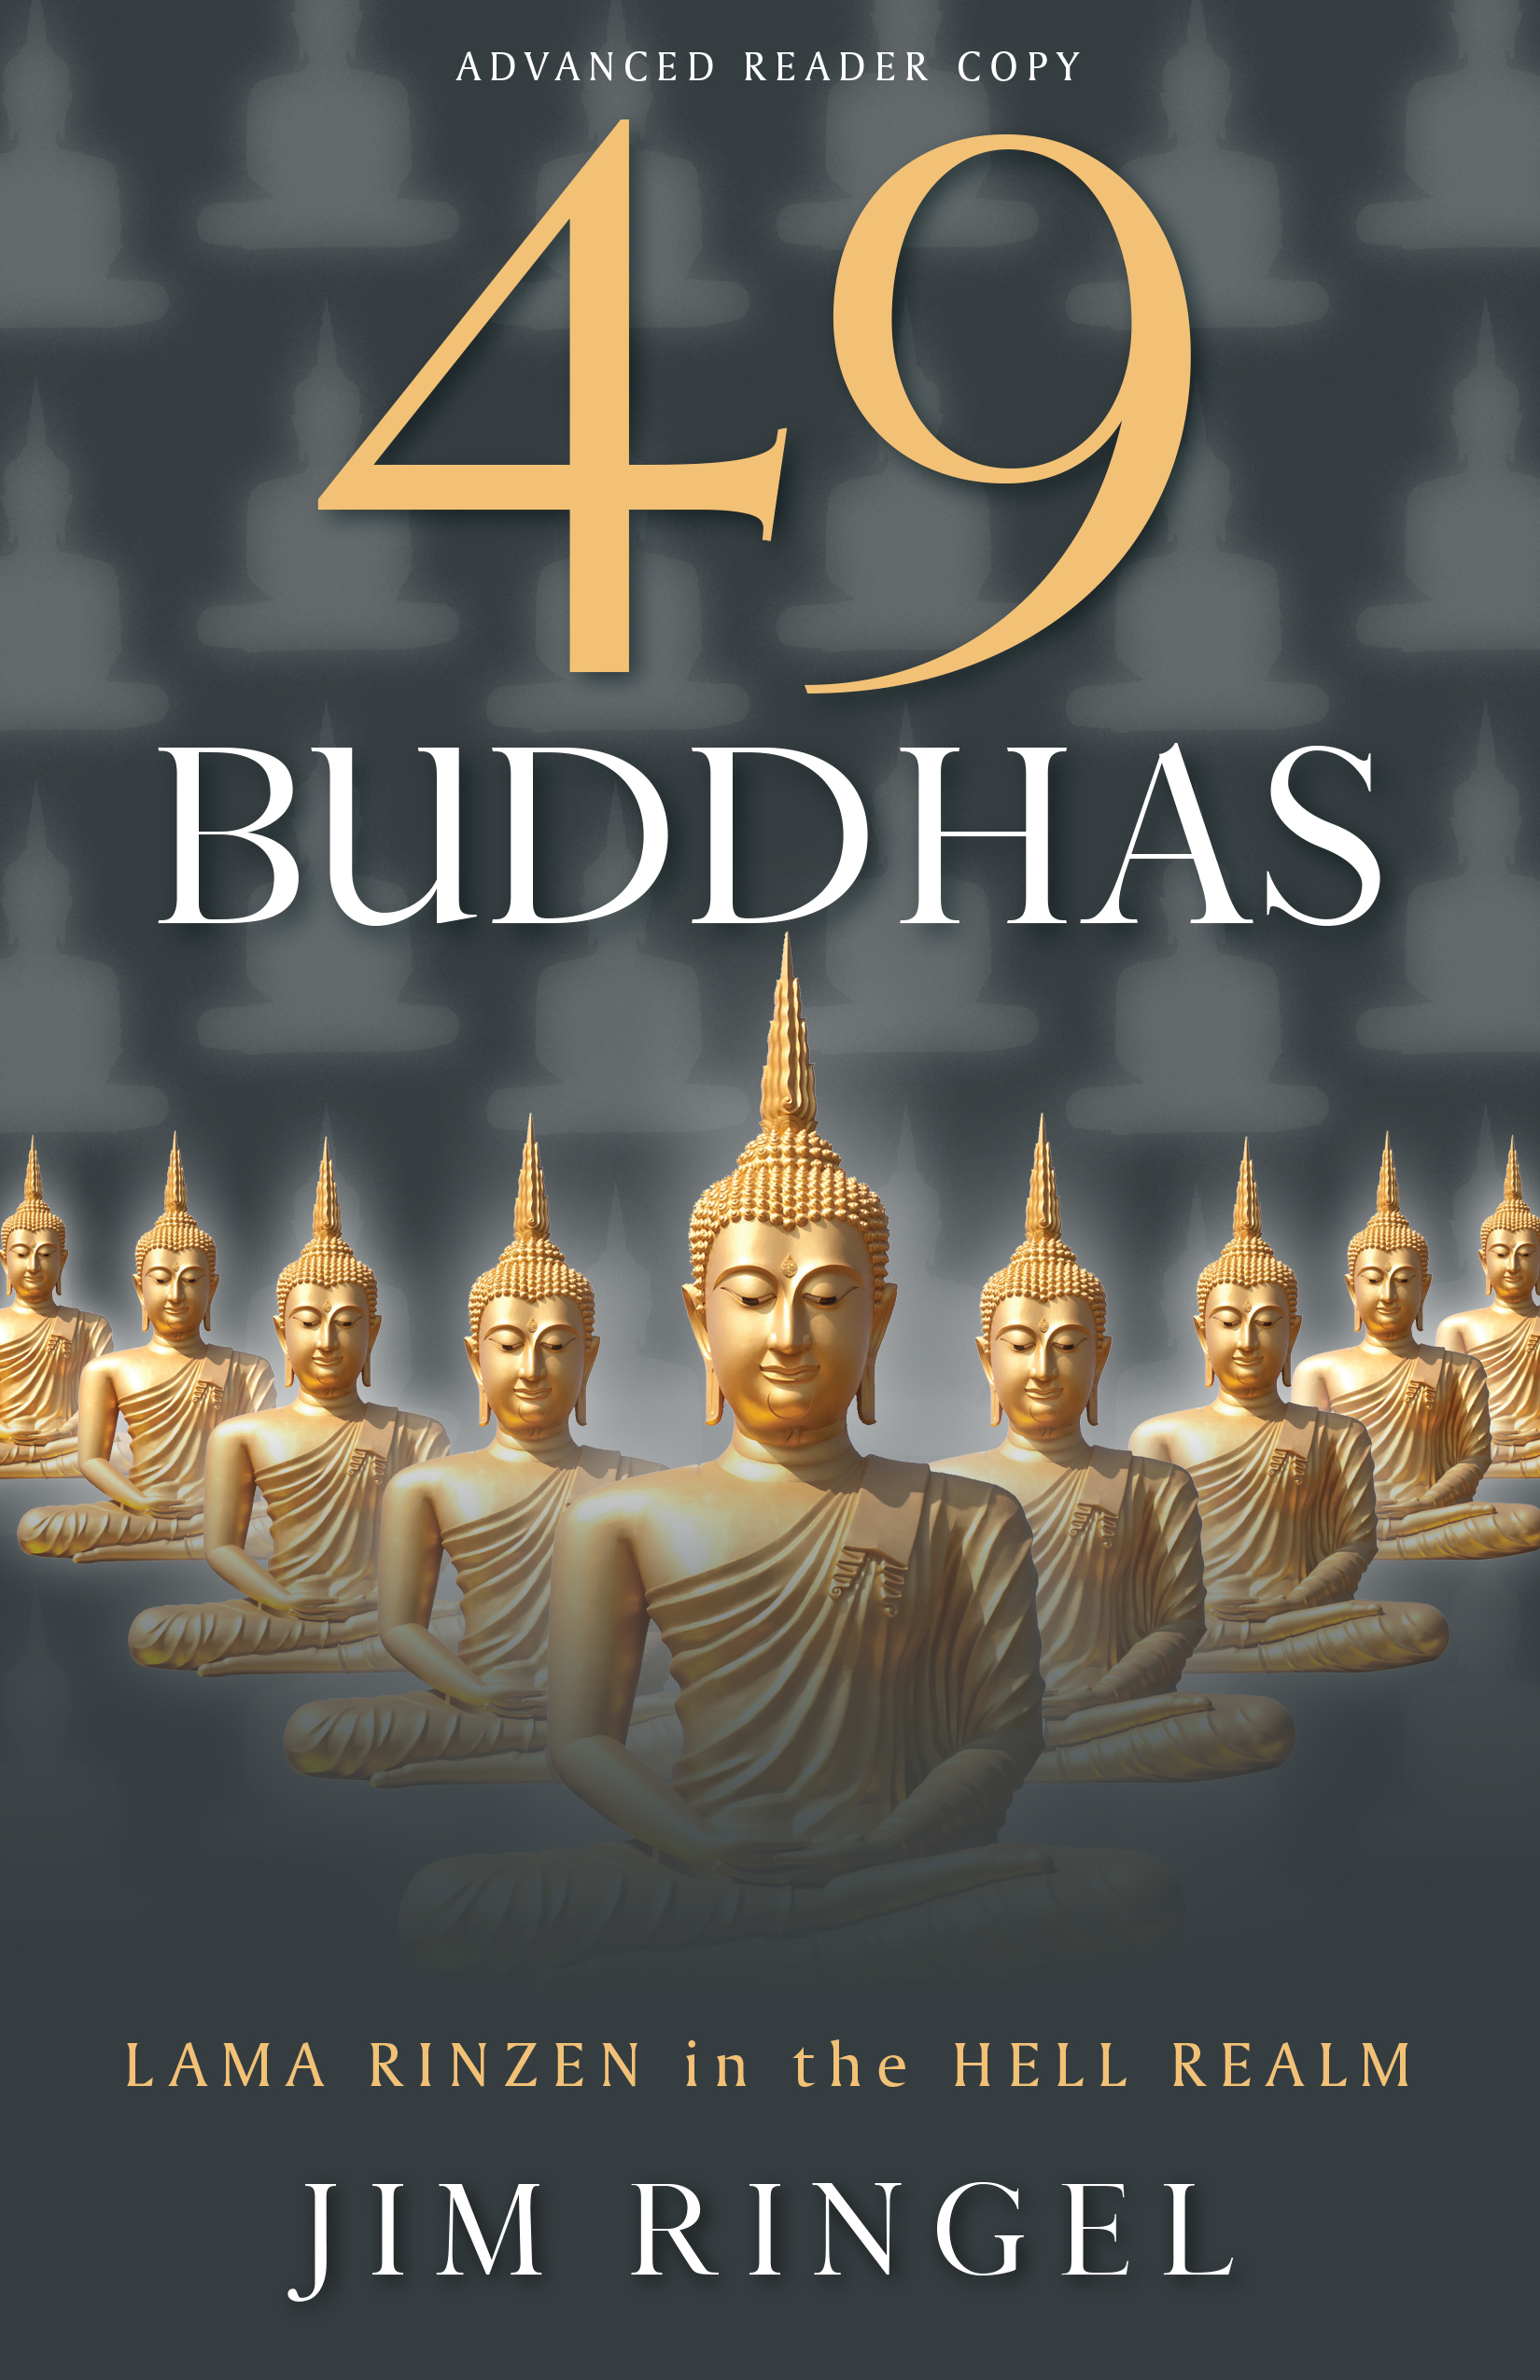 49 Buddhas by Jim Ringel